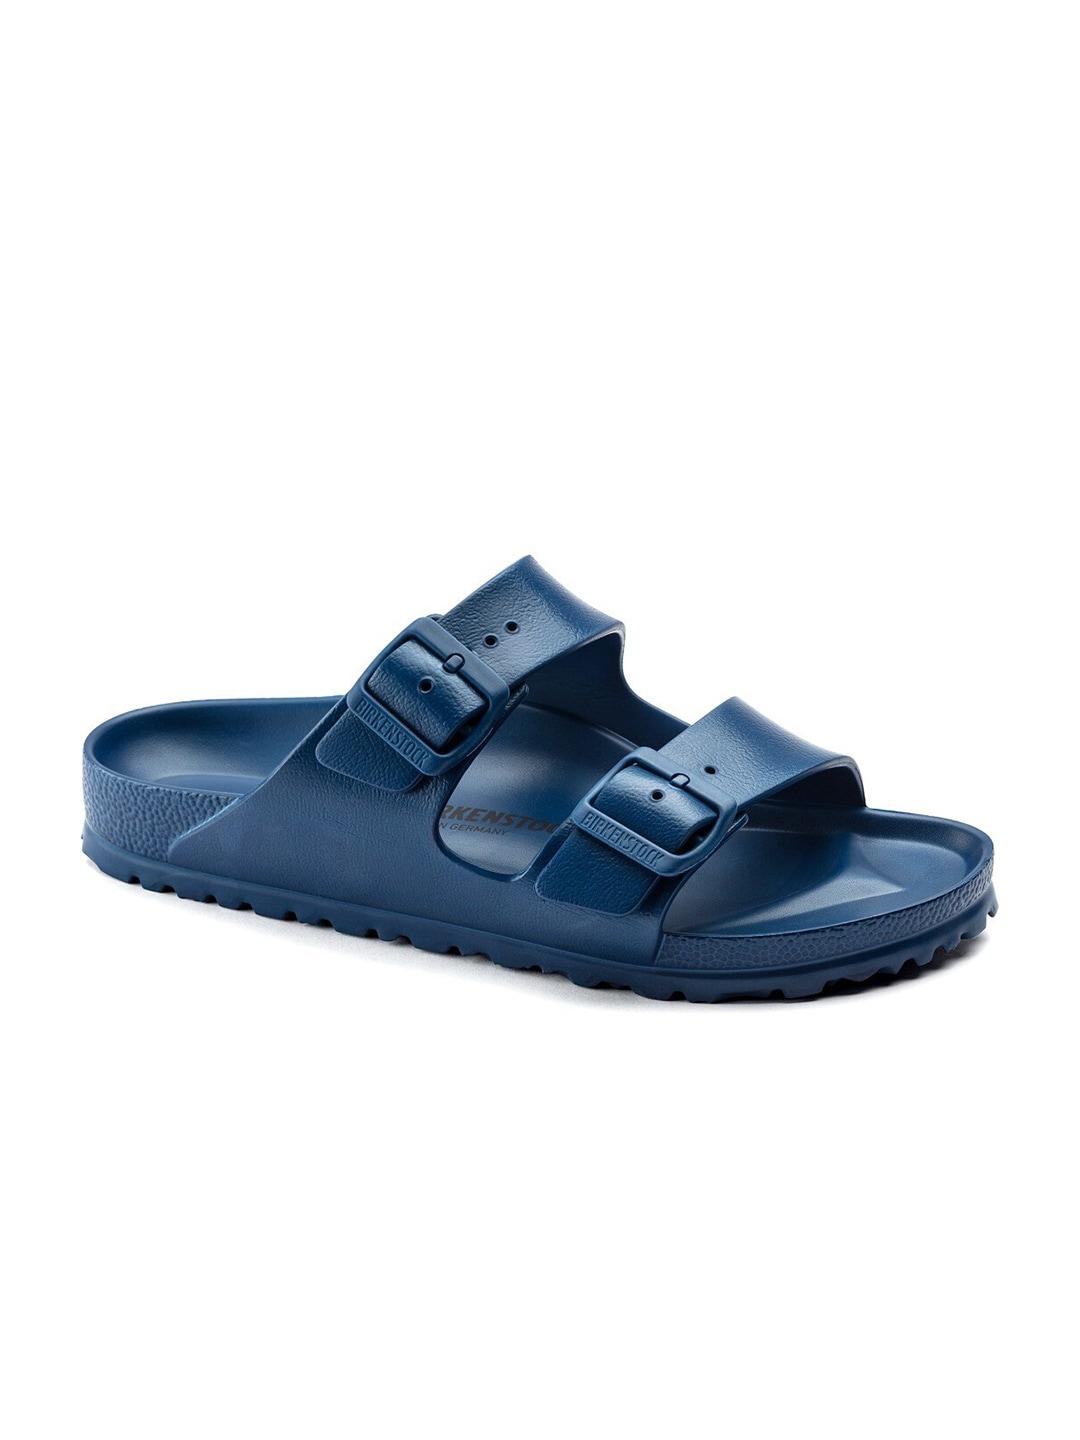 birkenstock unisex blue comfort sandals